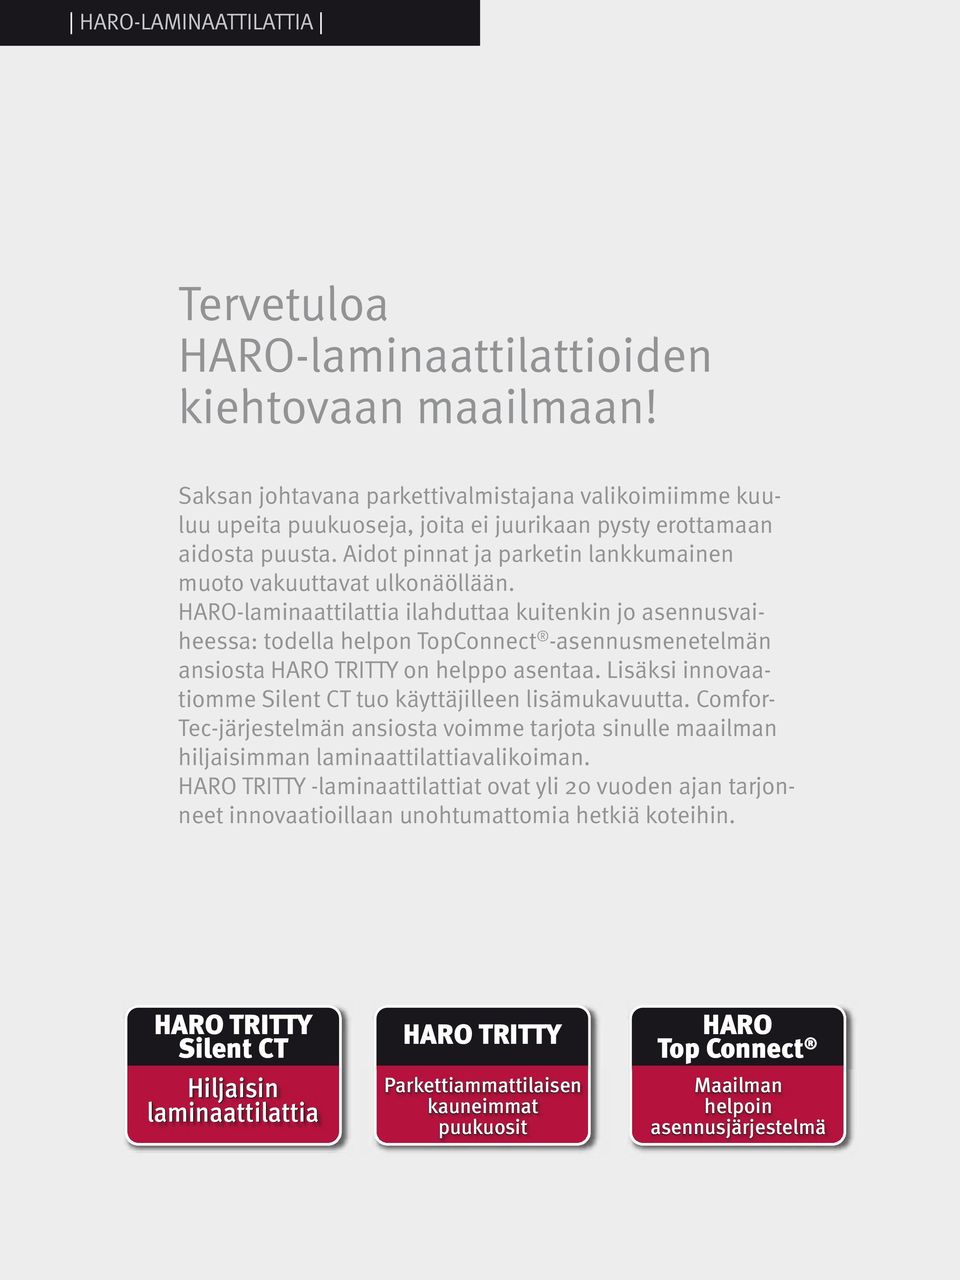 HARO-laminaattilattia ilahduttaa kuitenkin jo asennusvaiheessa: todella helpon TopConnect -asennusmenetelmän ansiosta HARO TRITTY on helppo asentaa.